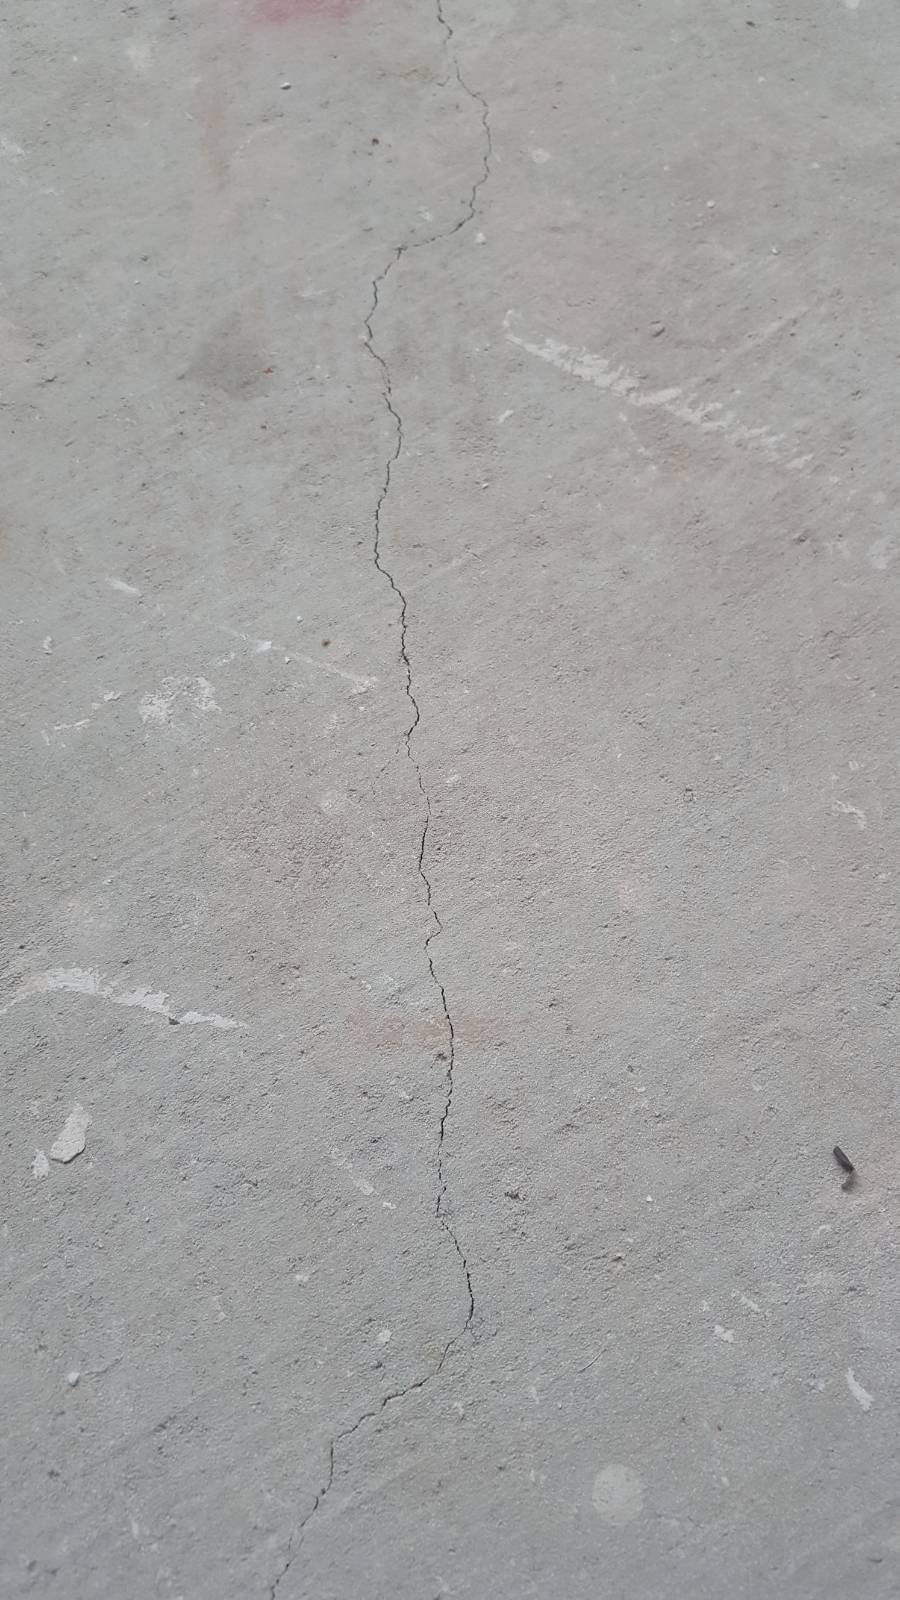 Crack in slab